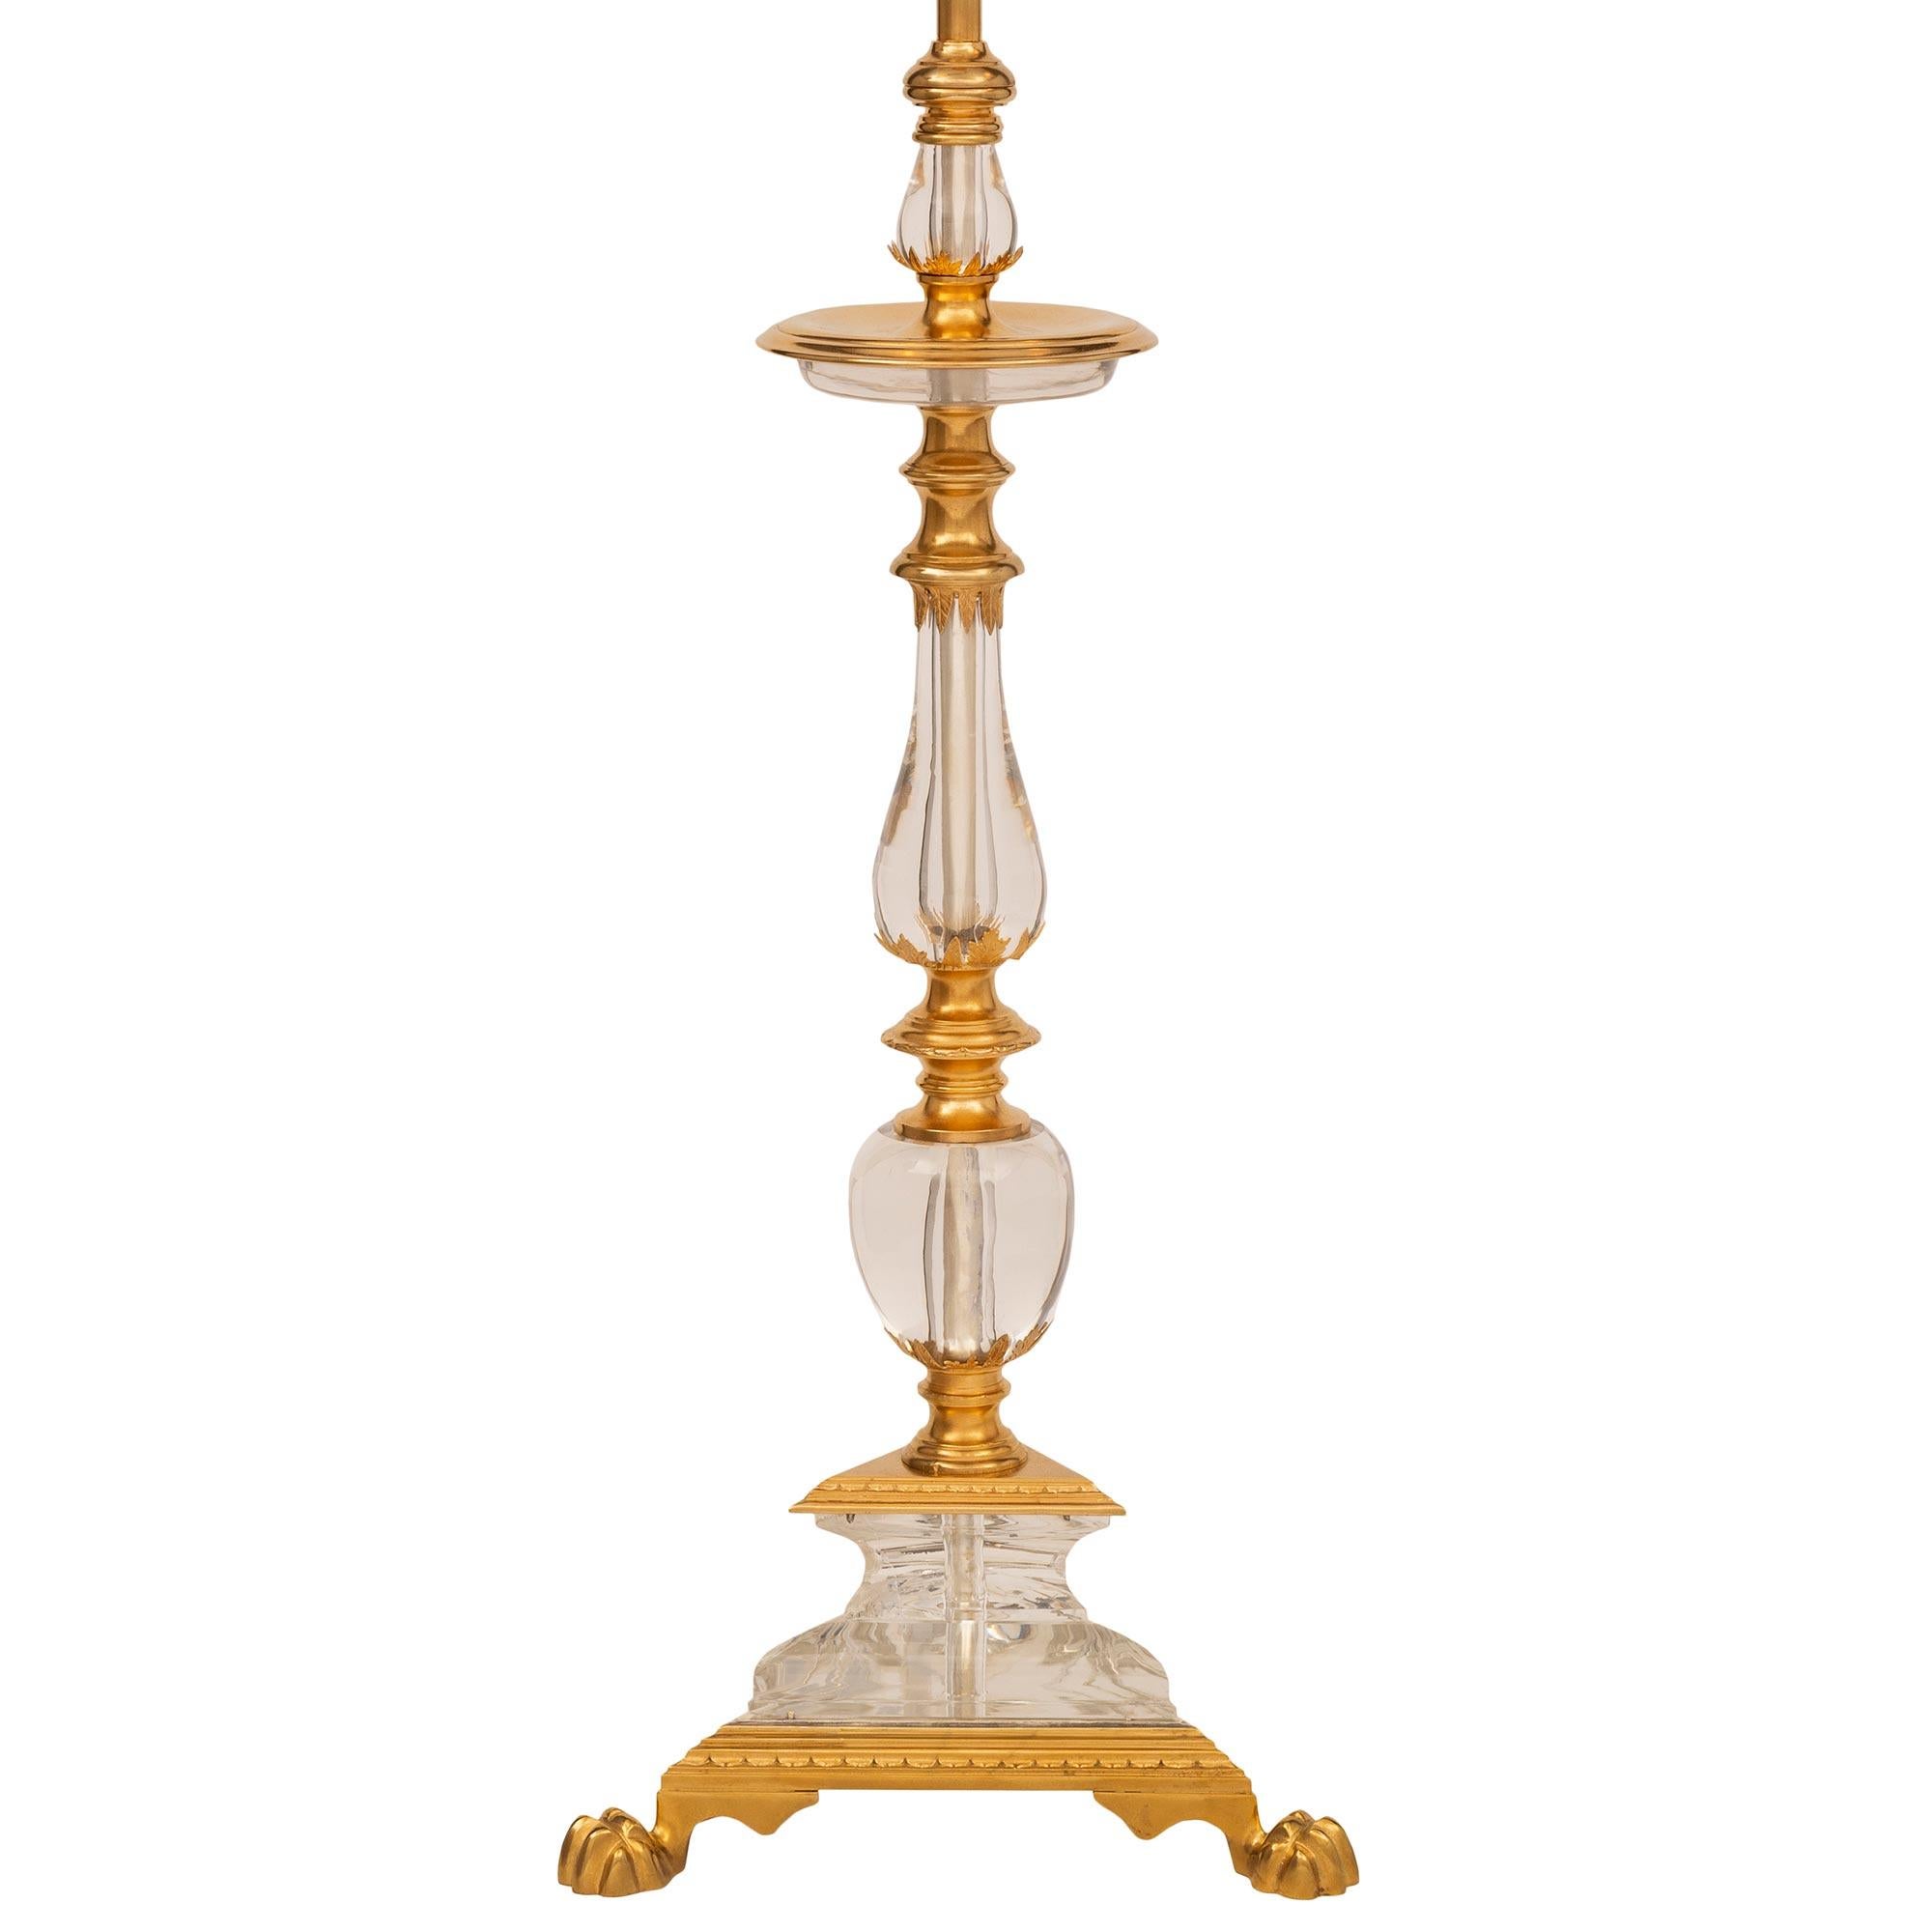 Une unique et extrêmement élégante lampe française du 19ème siècle en st. Louis XVI, bronze doré et cristal de Baccarat. La lampe est surélevée par une base triangulaire étonnante et très décorative avec une bande de bronze doré finement tachetée,